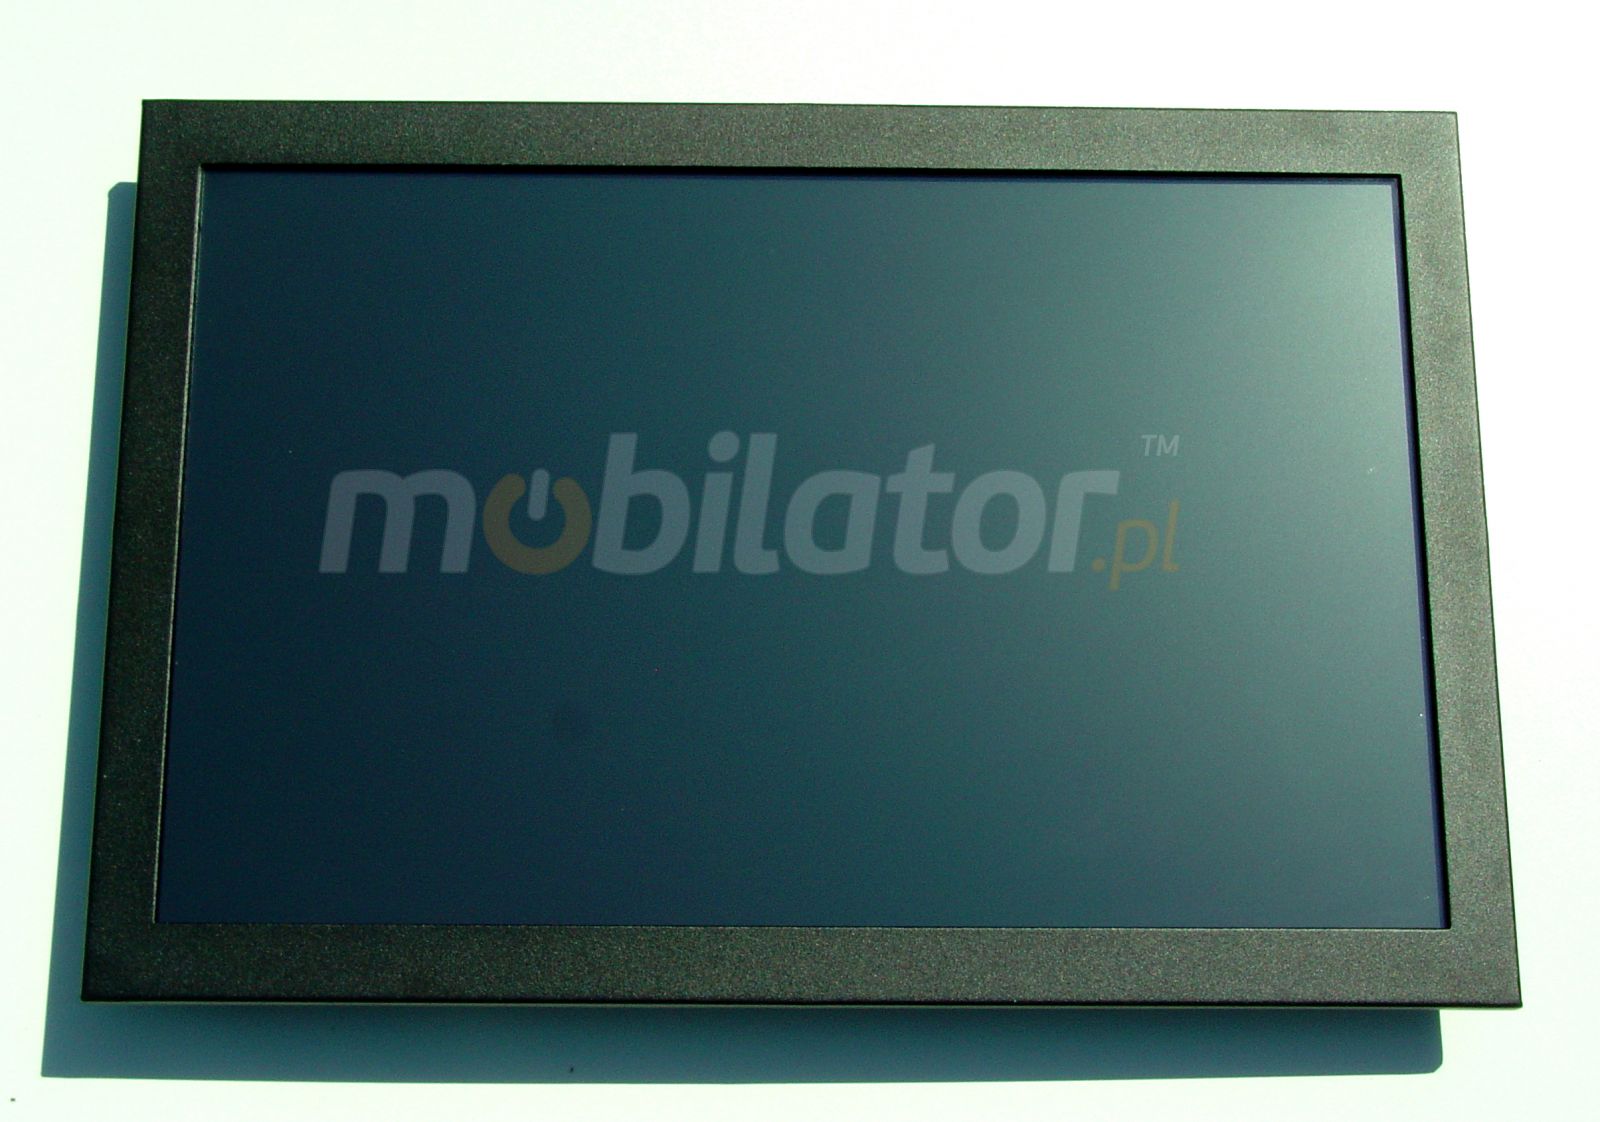  Monitor dotykowy PC MobiBox M22 Monitor dotykowy Ekran pojemnociowy capacitive wywietlacz 22 cali LED mobilator.pl New Portable Devices VGA HDMI